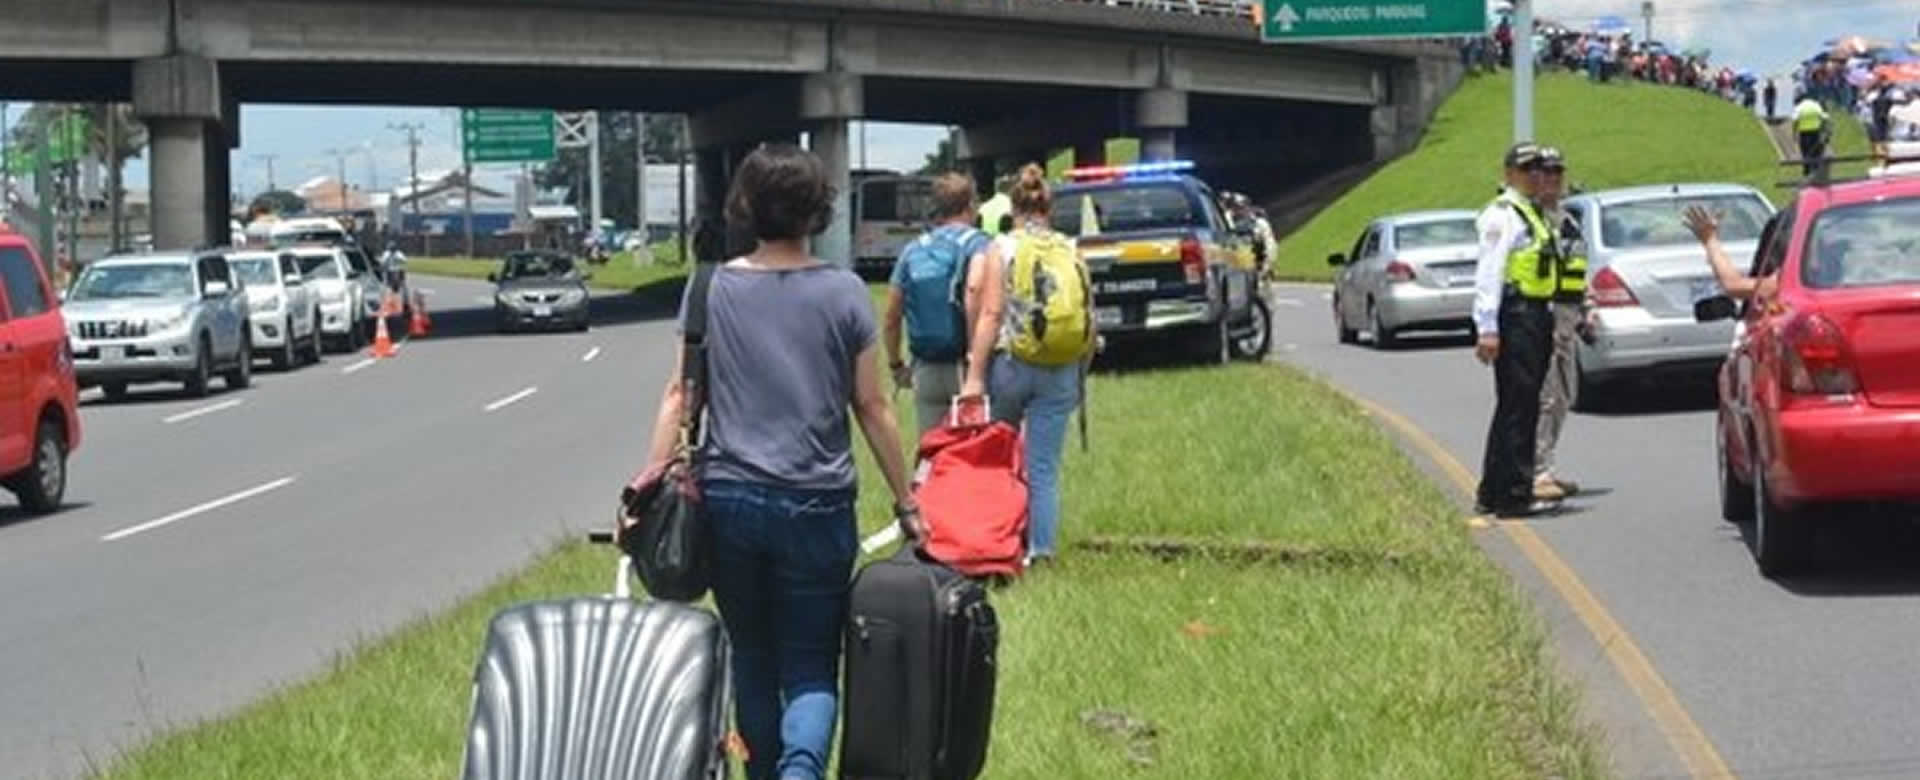 Turistas salen a pie de Costa Rica debido a bloqueo de carreteras por huelgas